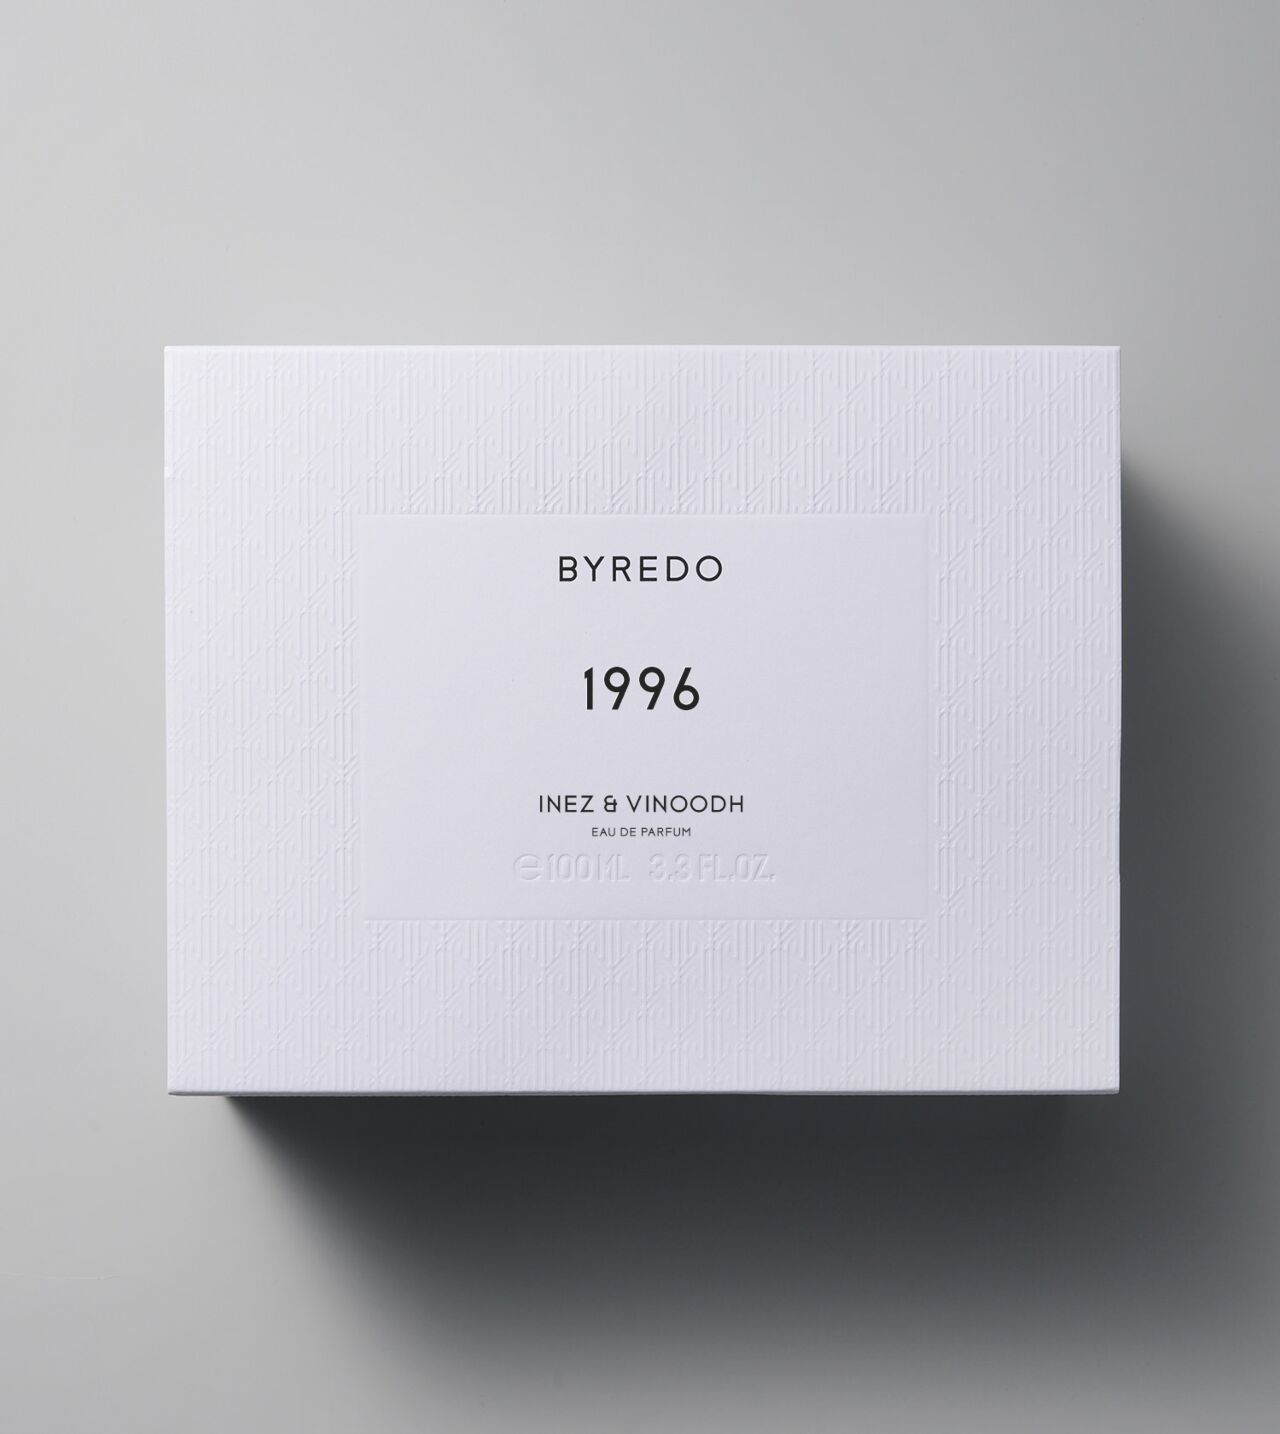 Buy now byredo 1996 edp 100ml at perfume baazaar at best prices.